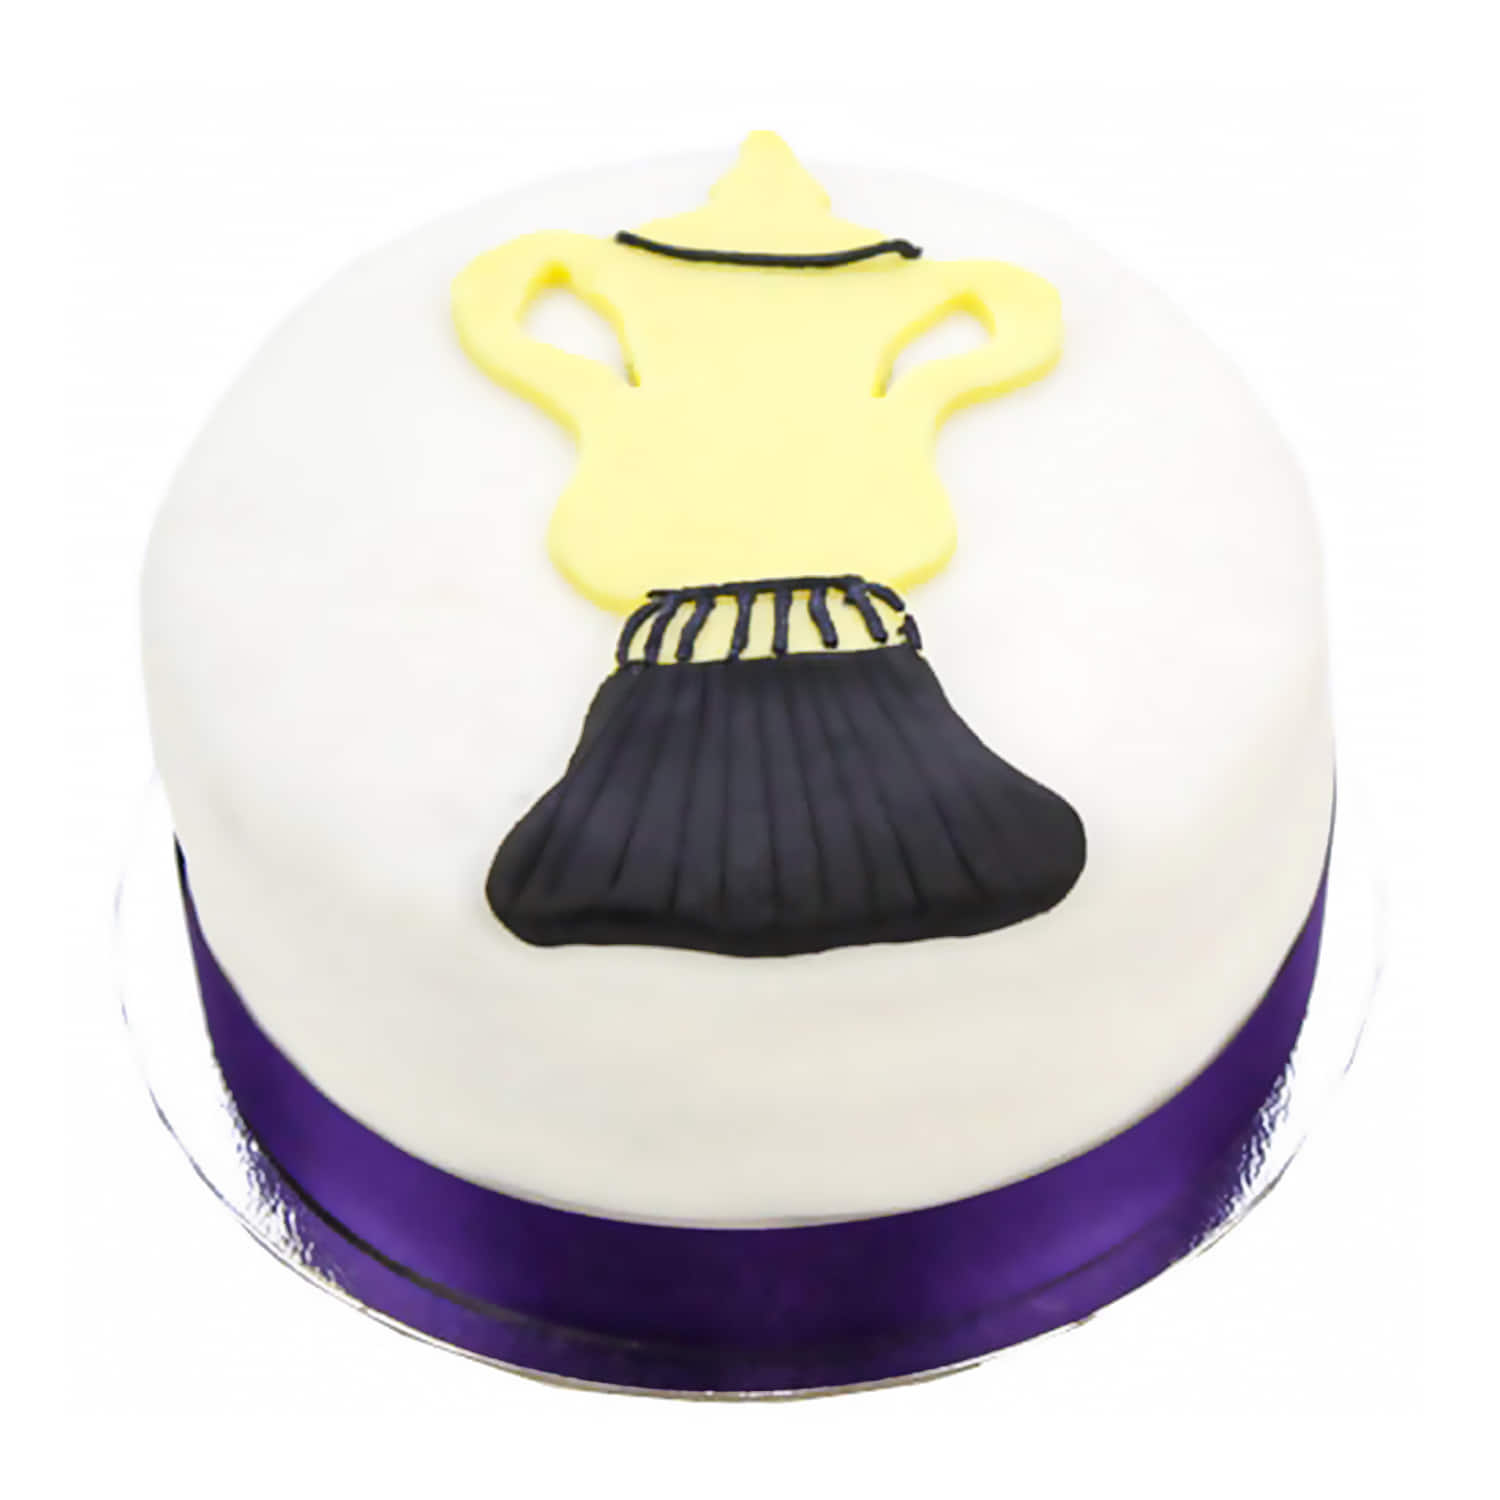 Acrylic Cake Topper - Congrats - Gold